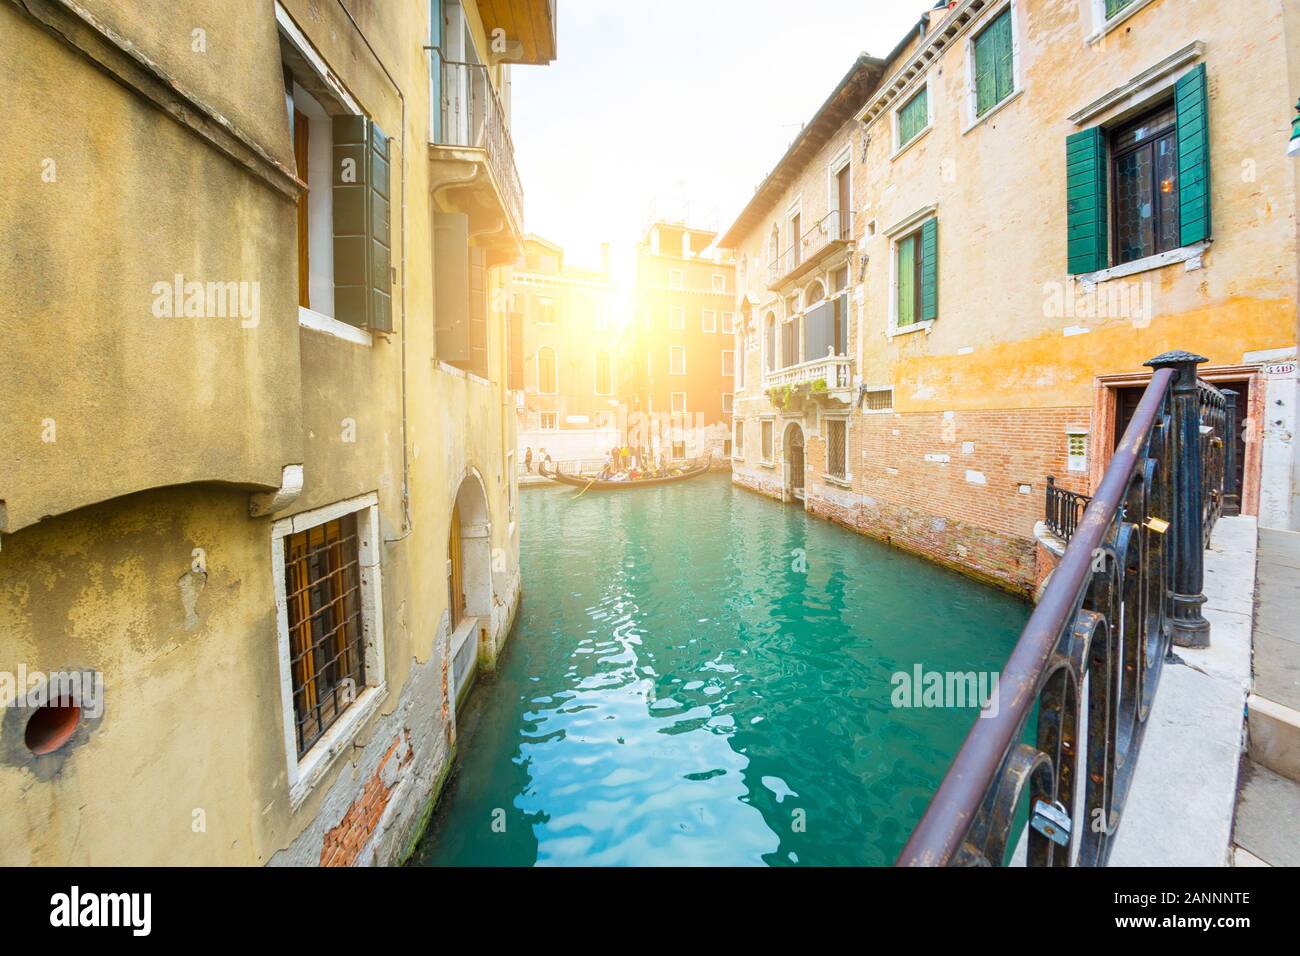 Venise, Italie - OCT 01, 2018 : merveilleux coin de Venise avec un canal et maisons anciennes Banque D'Images